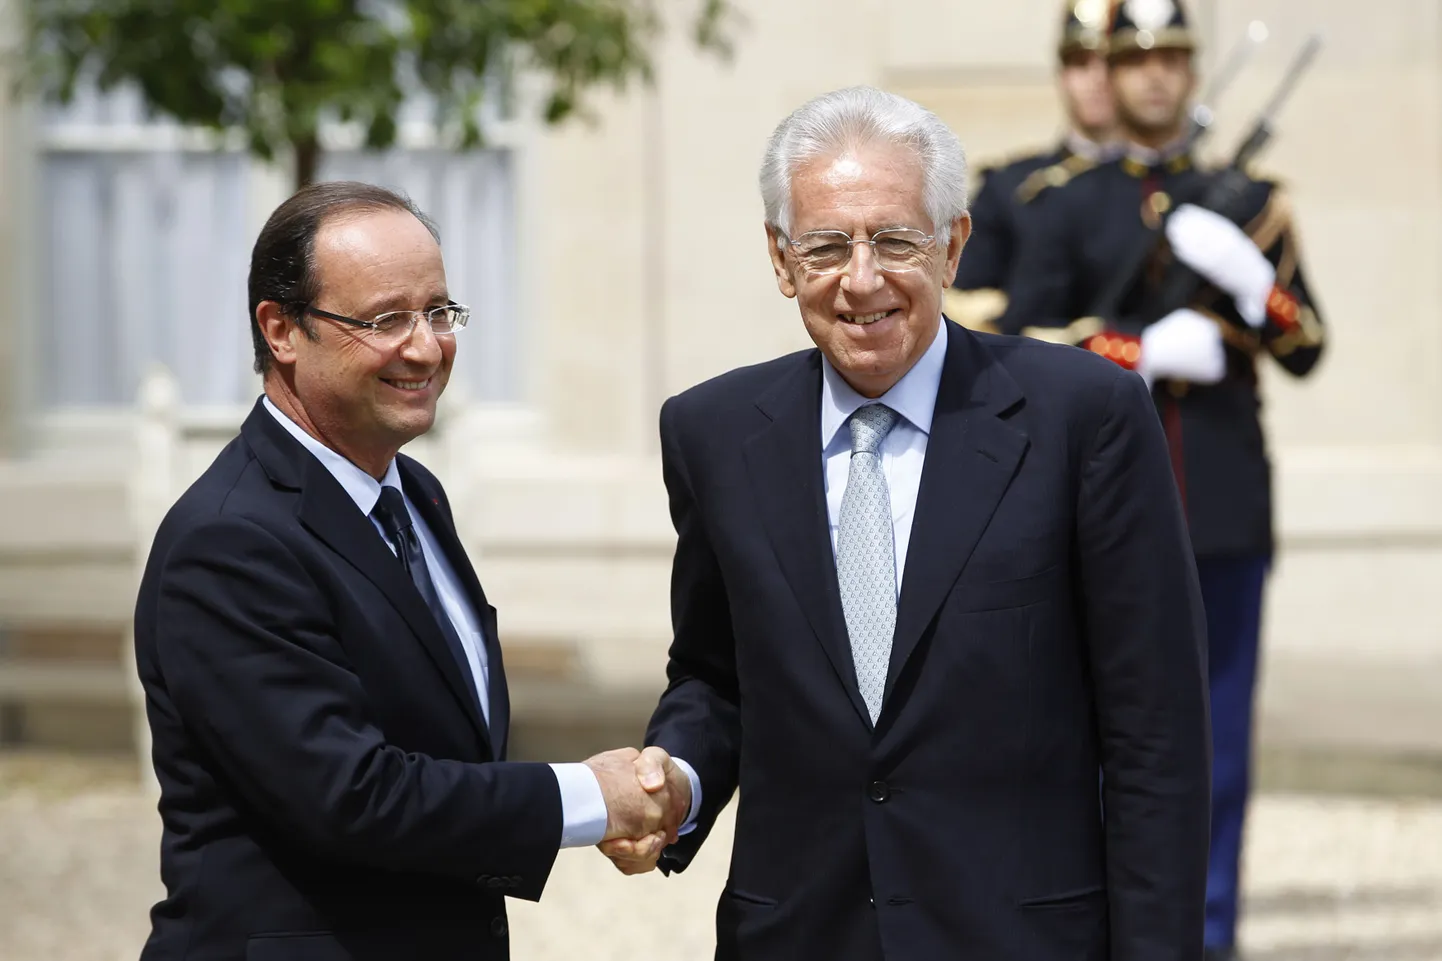 Itaalia peaminister Mario Monti ja Prantsuse president François Hollande (vasakul)eilsel kohtumisel.